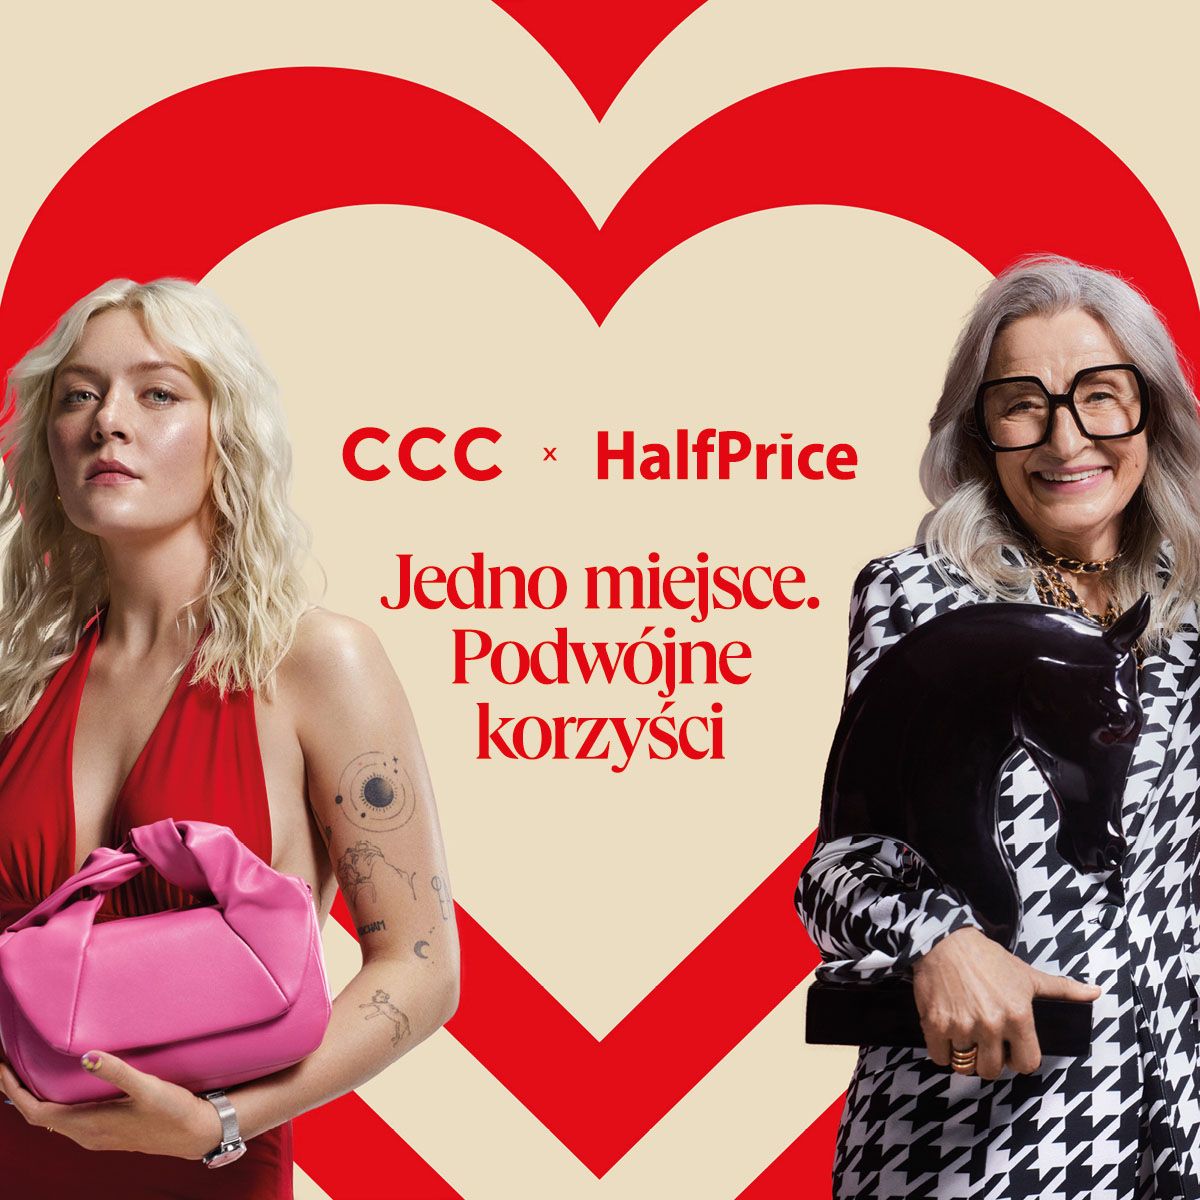 CCC i Half Price Heart Club. Jedno miejsce, podwójne korzyści!